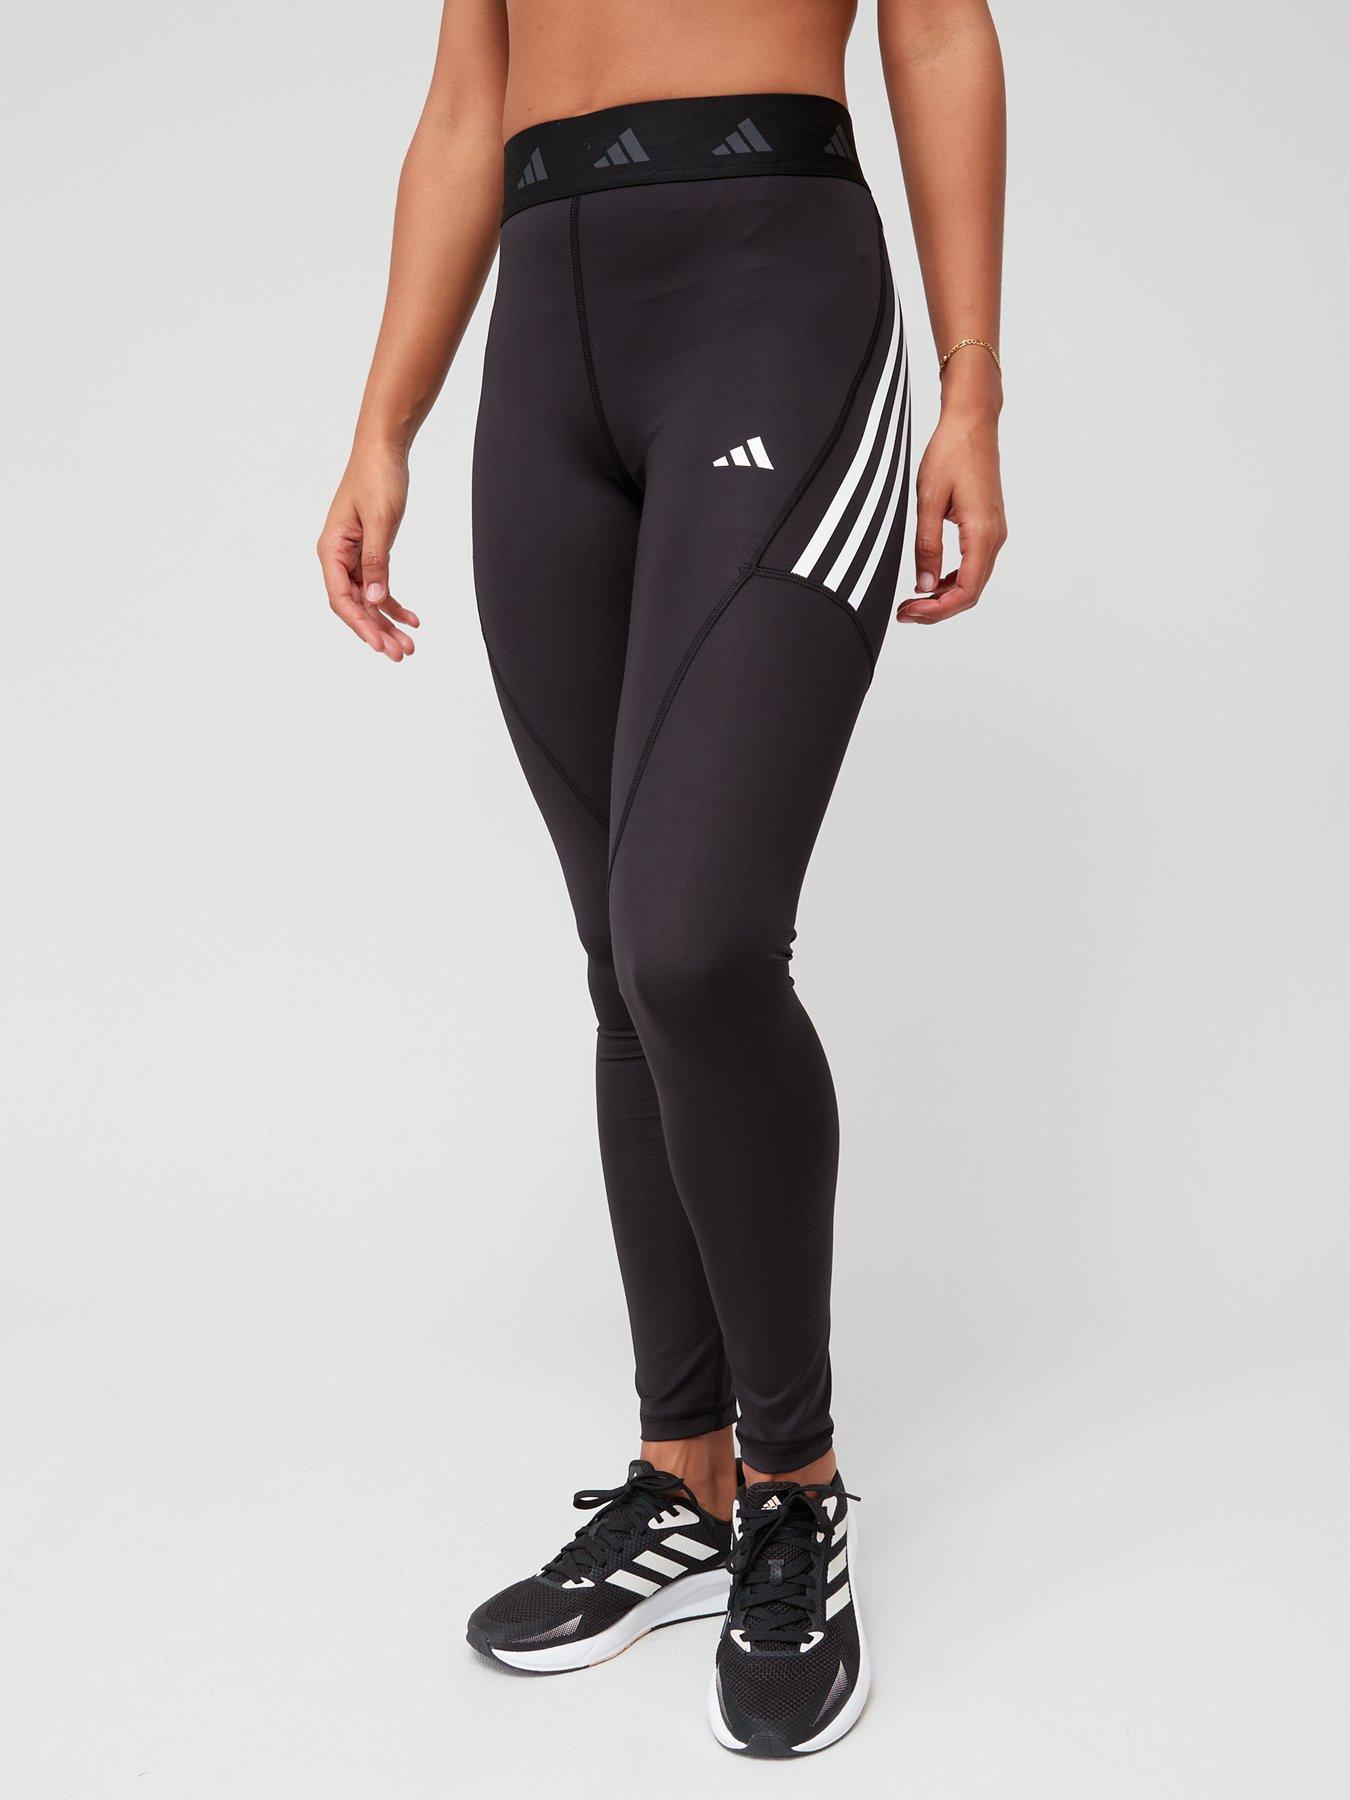 adidas Optime Full-Length Leggings - Black, Women's Training